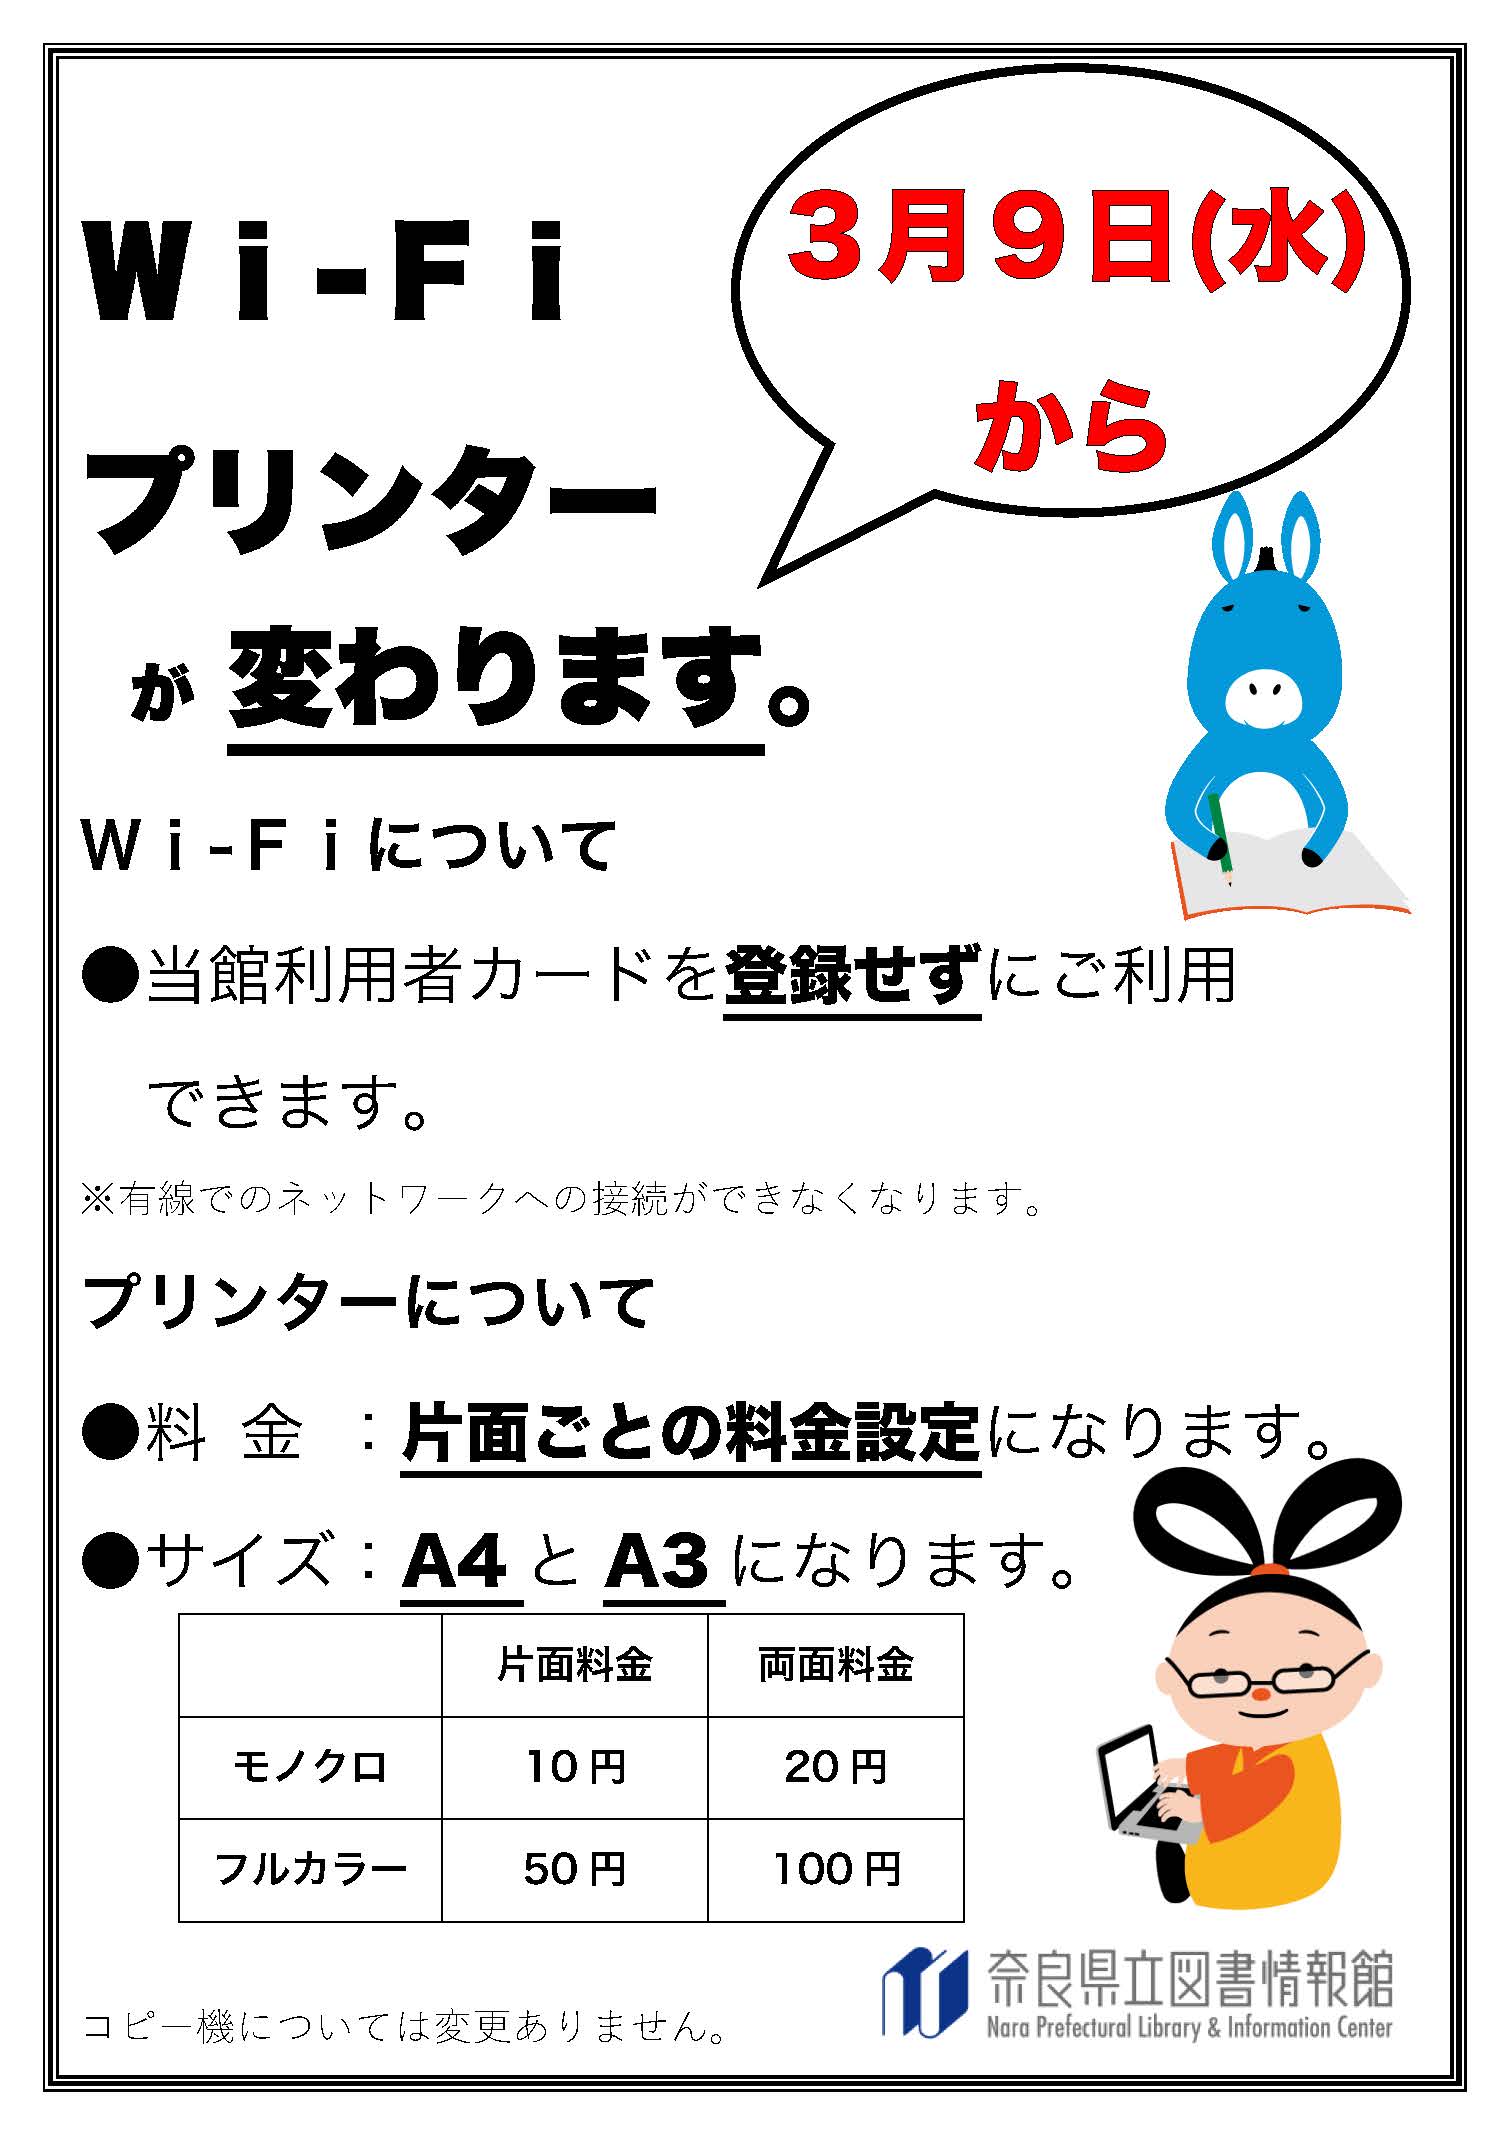 Wifi コピー料金変更